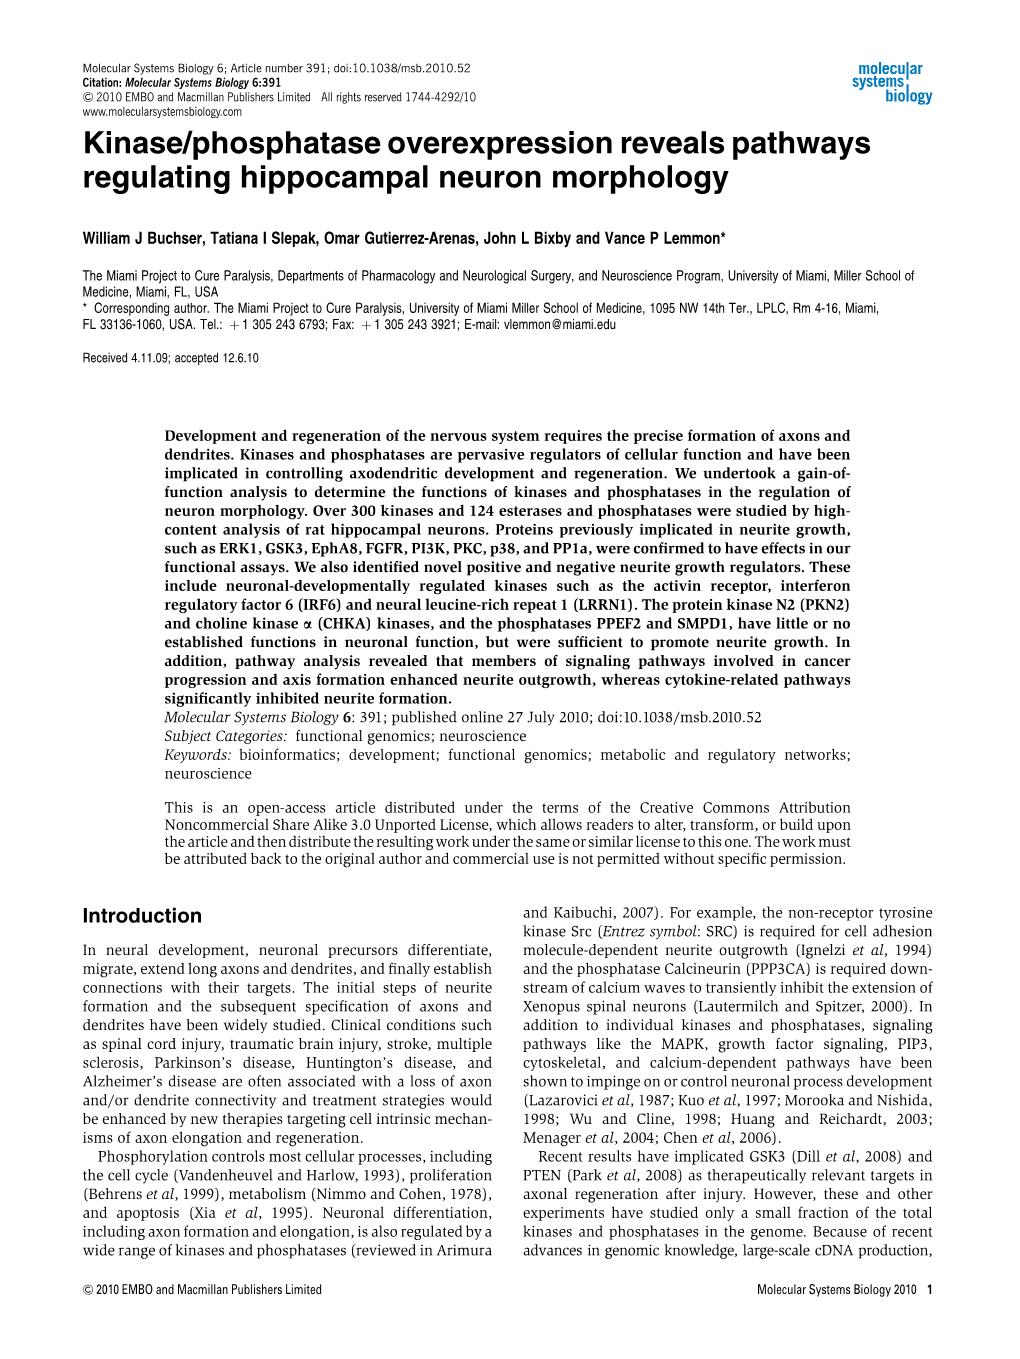 Kinase/Phosphatase Overexpression Reveals Pathways Regulating Hippocampal Neuron Morphology